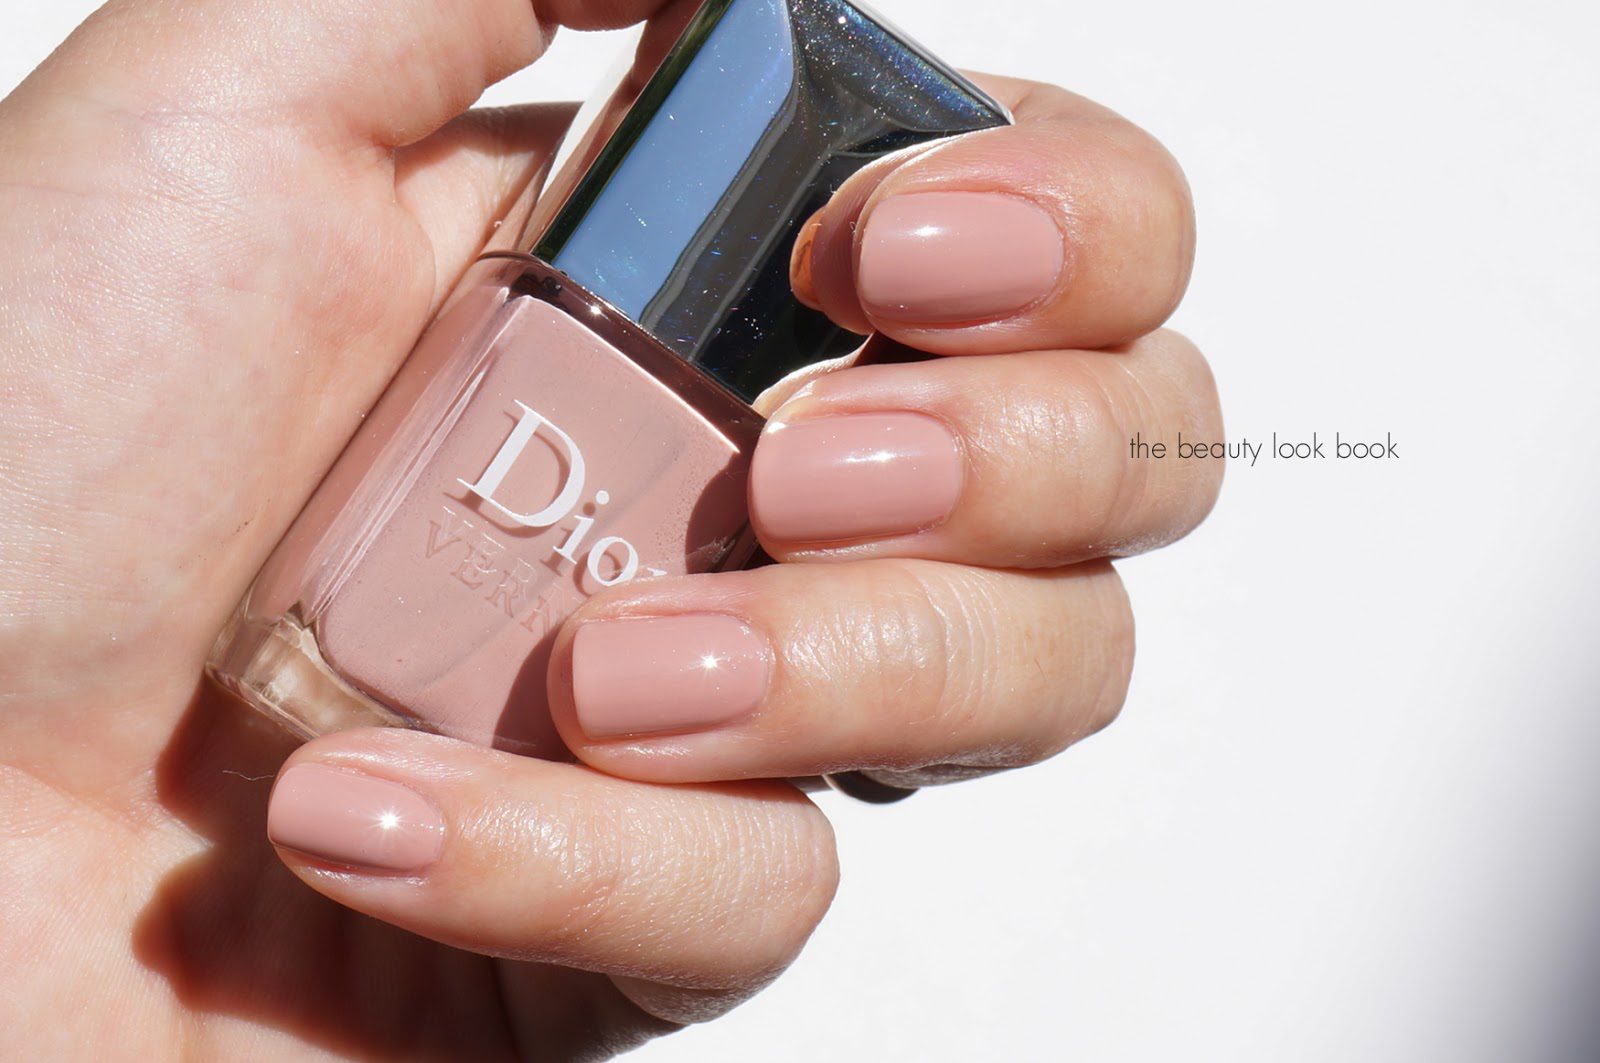 dior pink petal nail polish